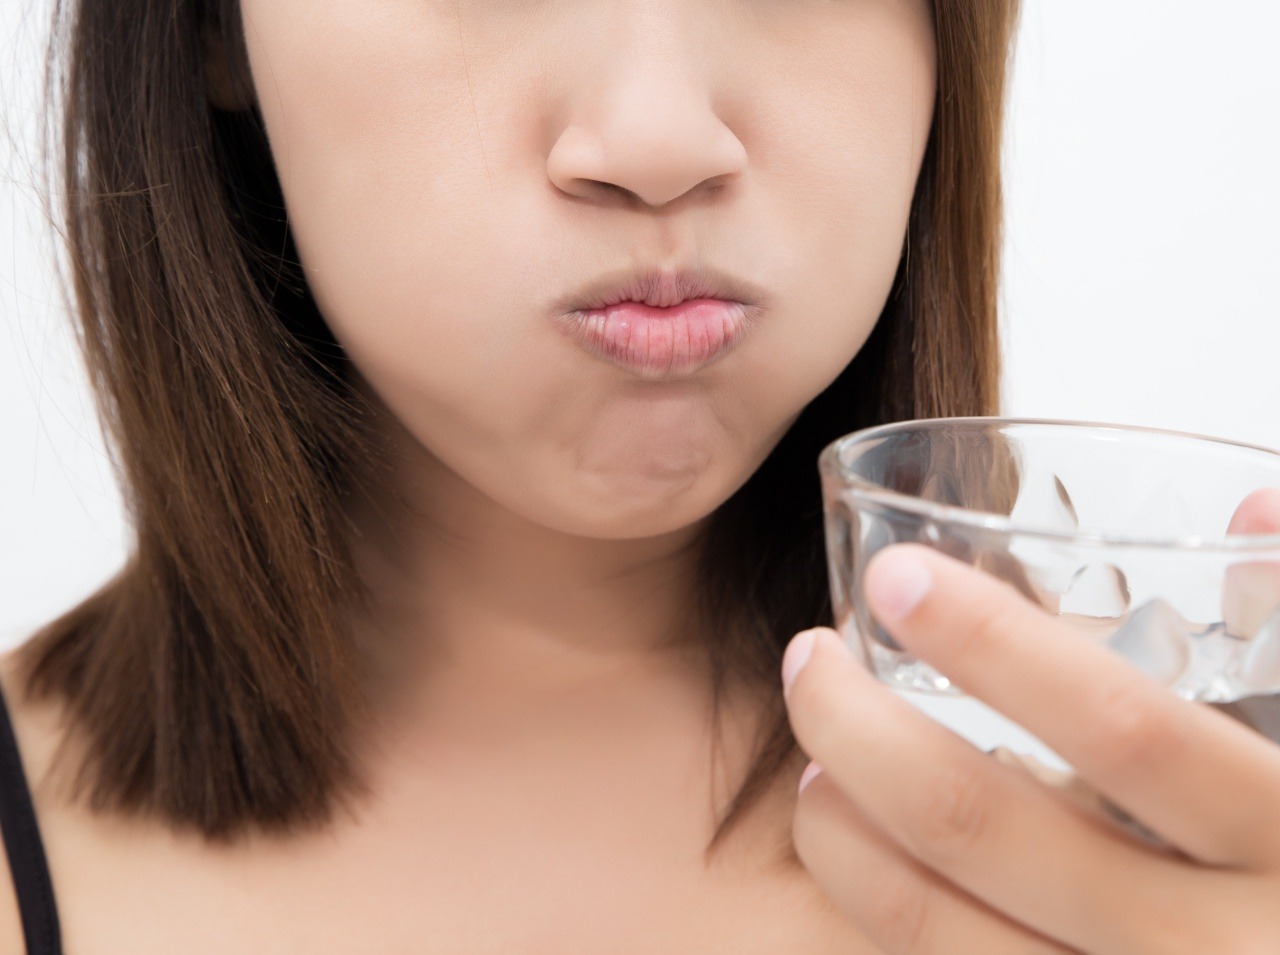 Nedostatok tekutín totiž spôsobuje sucho v ústach, čo má za následok premnoženie baktérií.